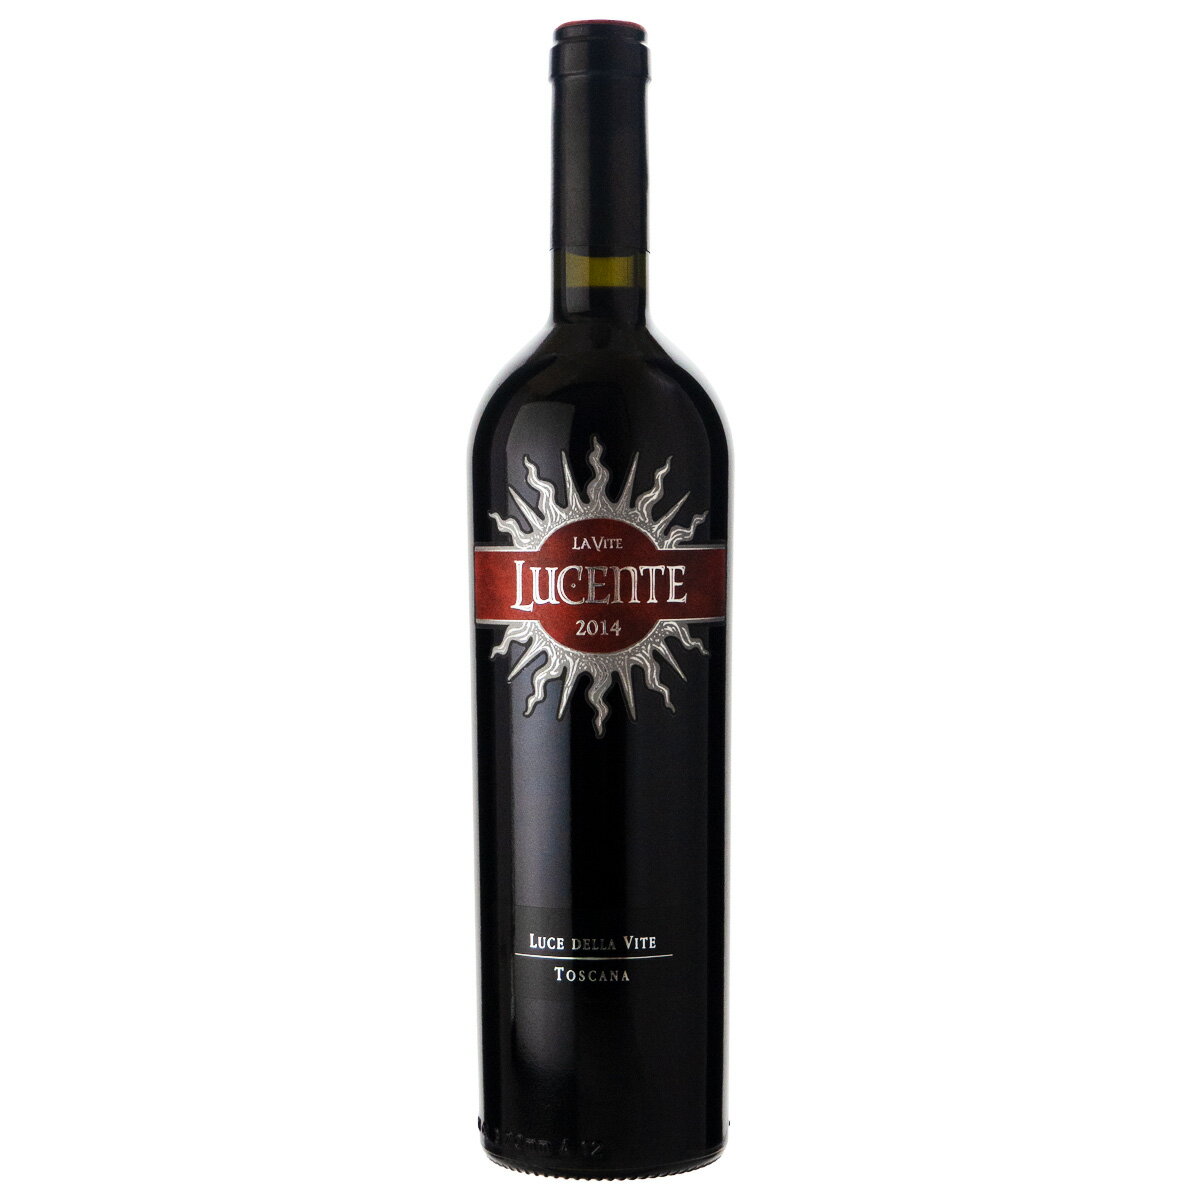 ルーチェ デッラ ヴィーテ ルチェンテ 2014 750ml 赤ワイン イタリア (h01-5126)